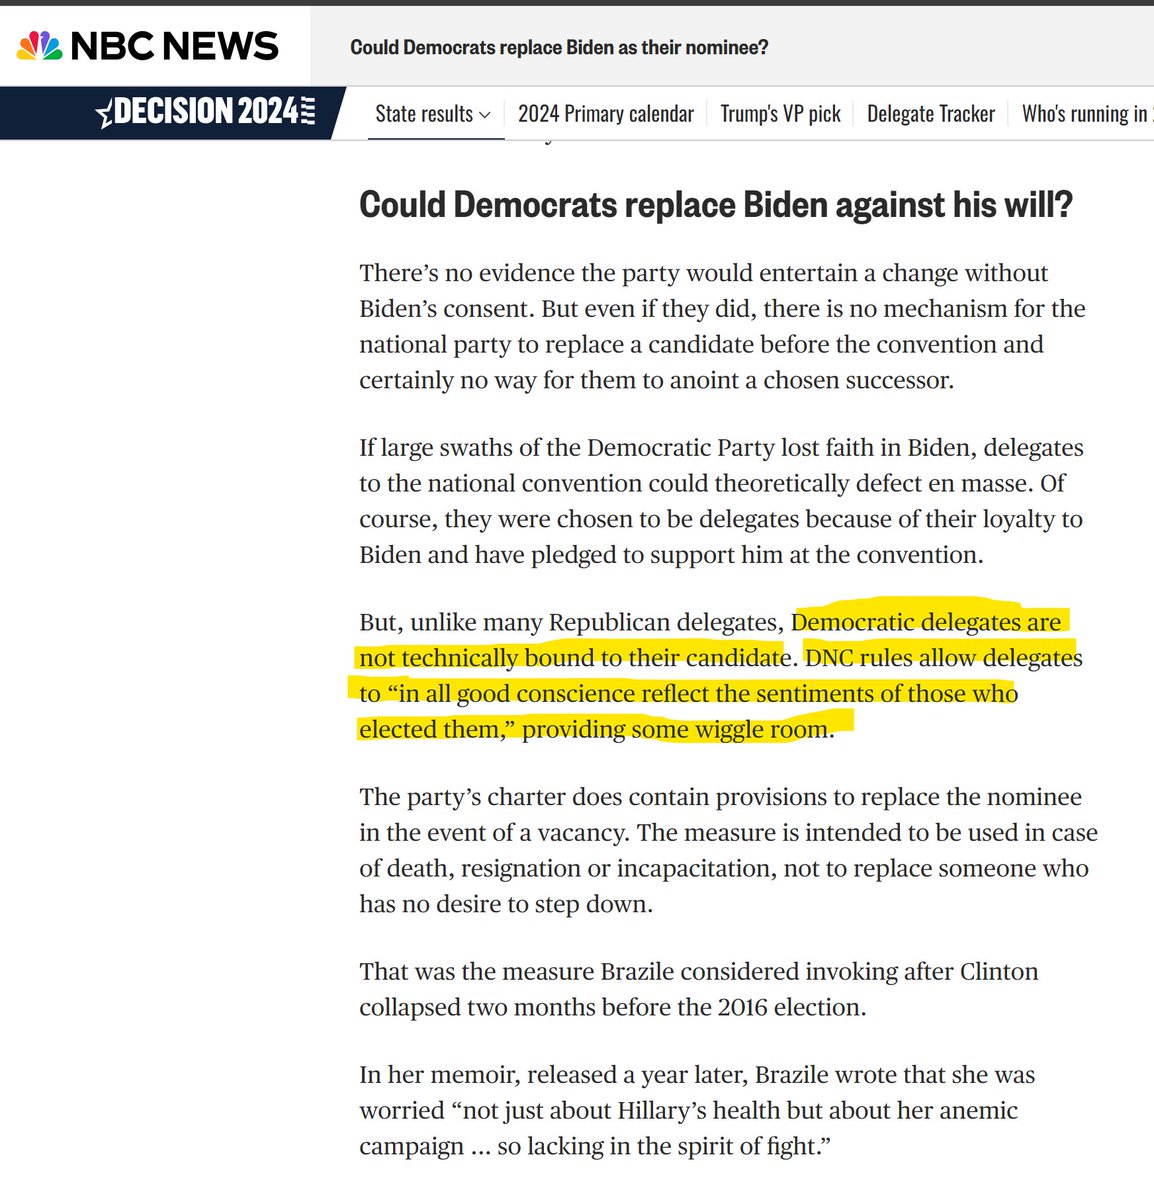 Выяснил: демы таки могут заменить Байдена ВОПРЕКИ его воле на DNC (в отличие от респов, которые не могут провернуть такой финт ушами): nbcnews.com/politics/2024-…